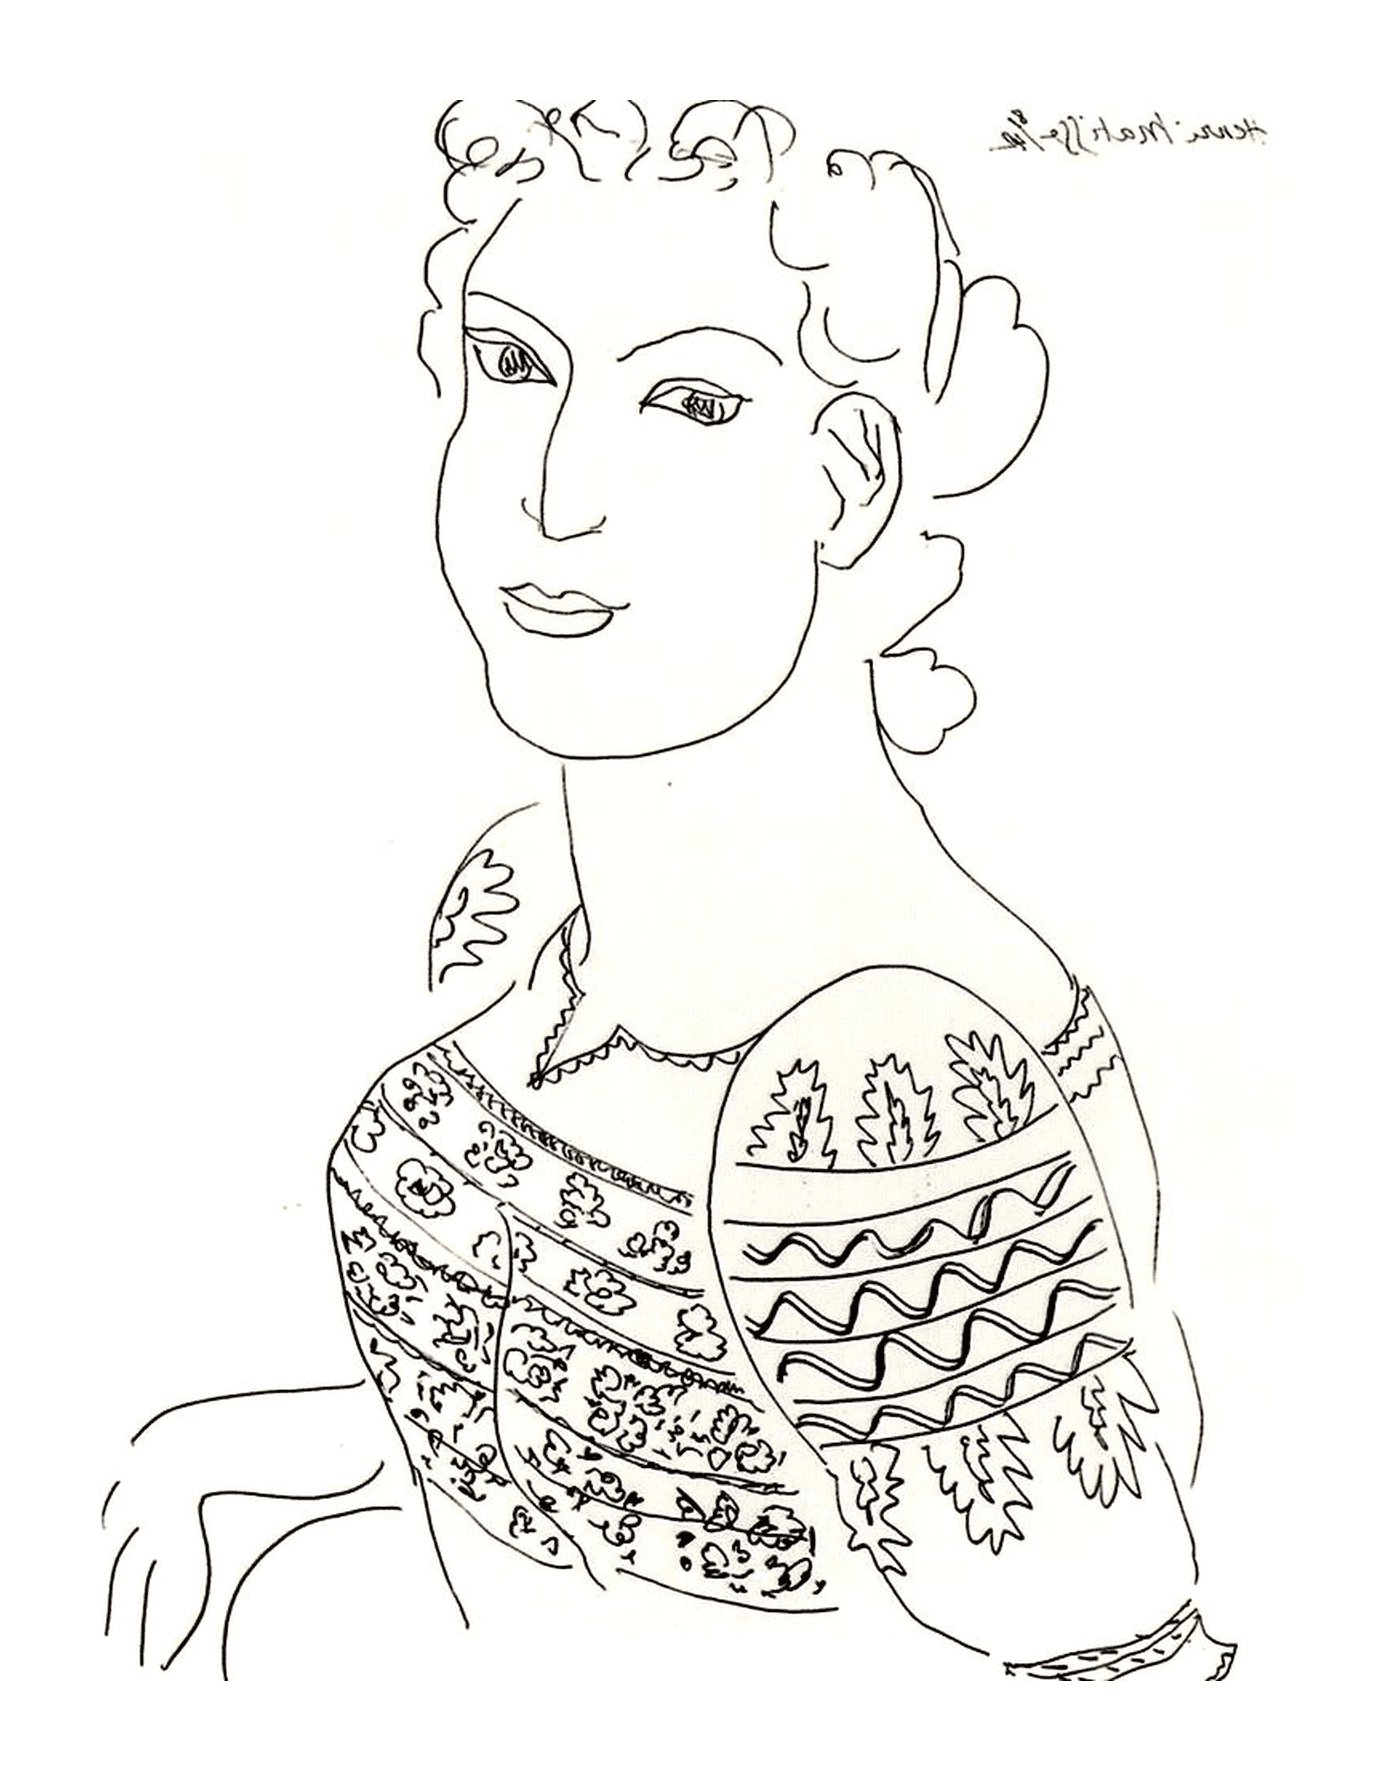  una mujer que lleva un suéter en una blusa rumana difícil de identificar, probablemente un trabajo de Matisse 